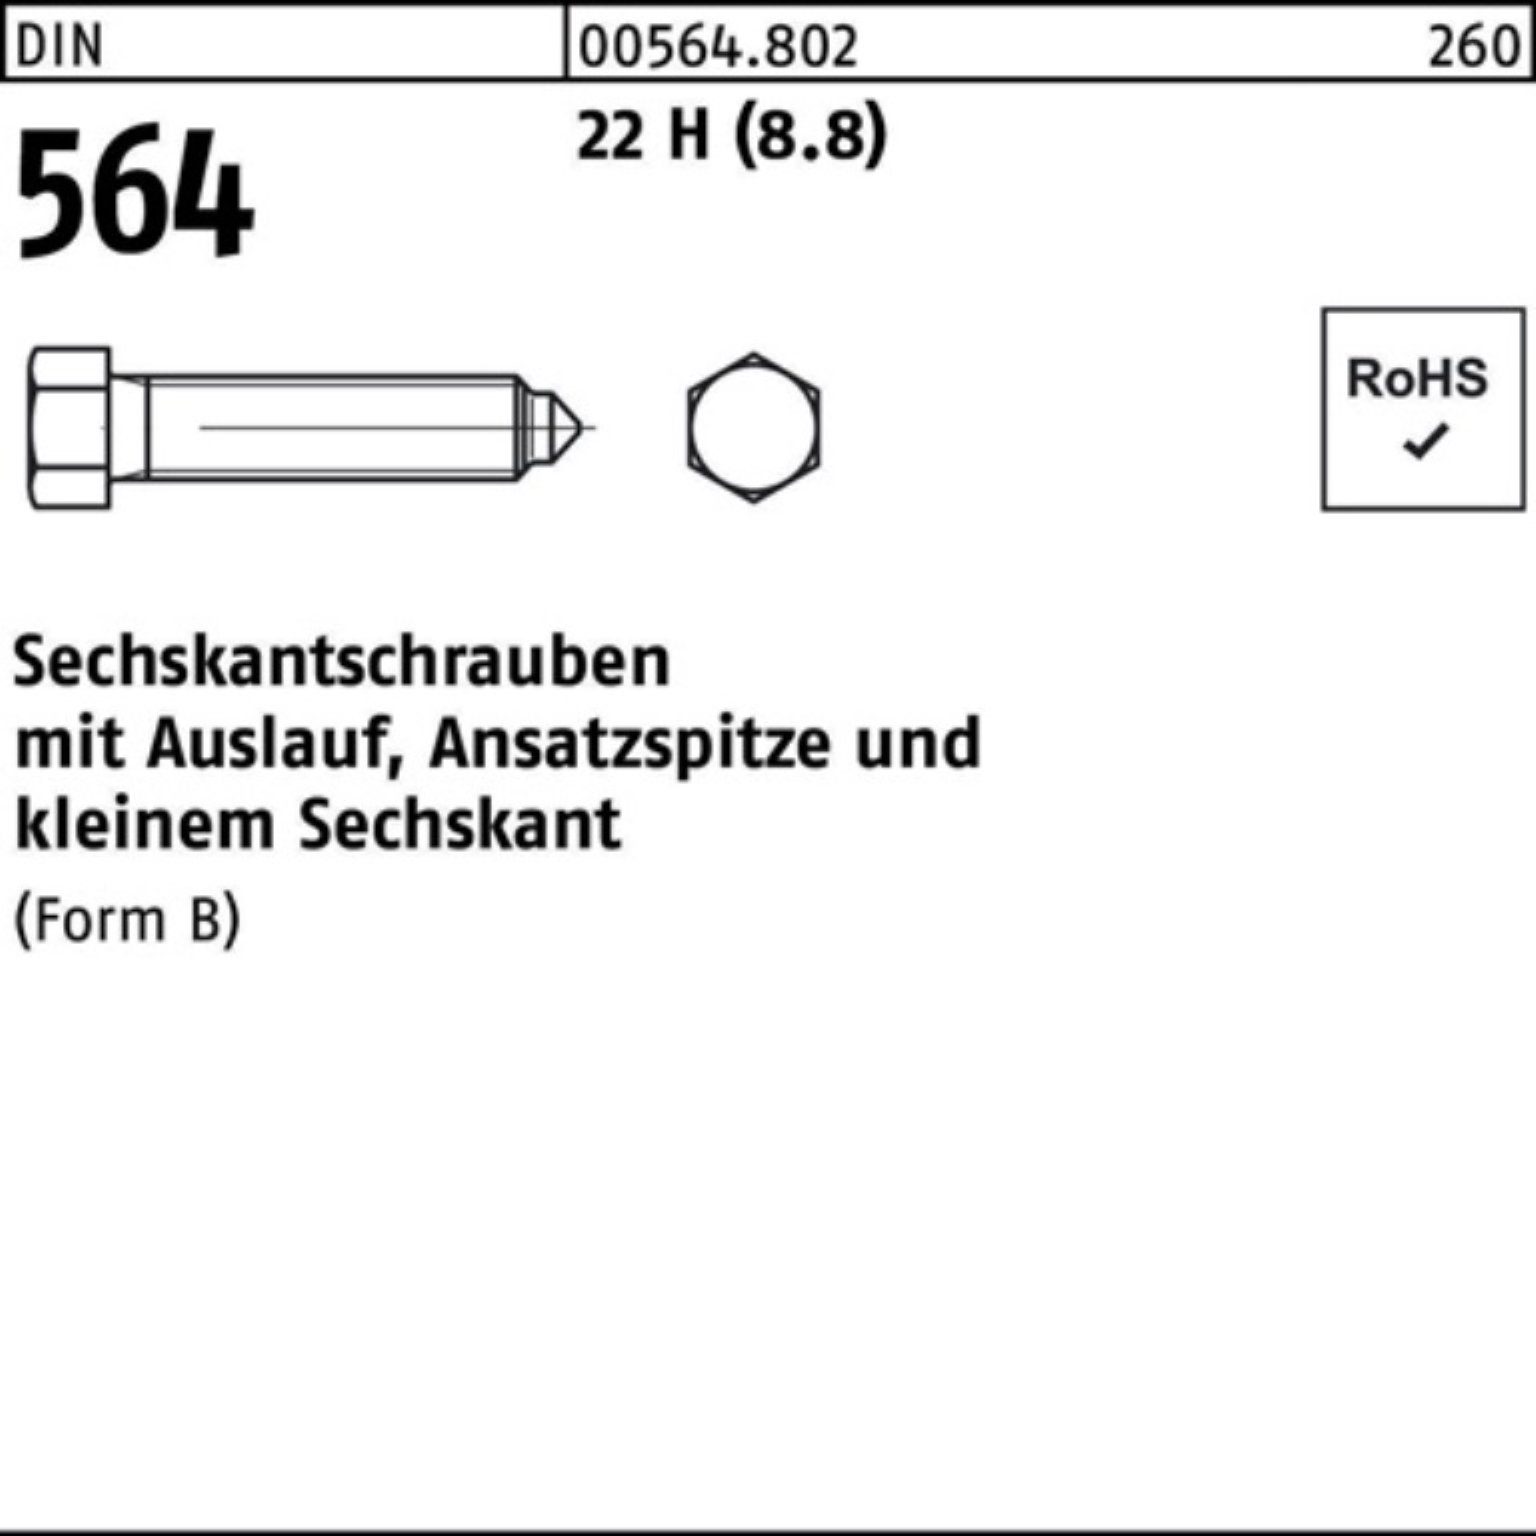 Reyher Sechskantschraube 100er Pack Sechskantschraube DIN 564 Ansatzspitze/Auslauf BM 16x 100 2